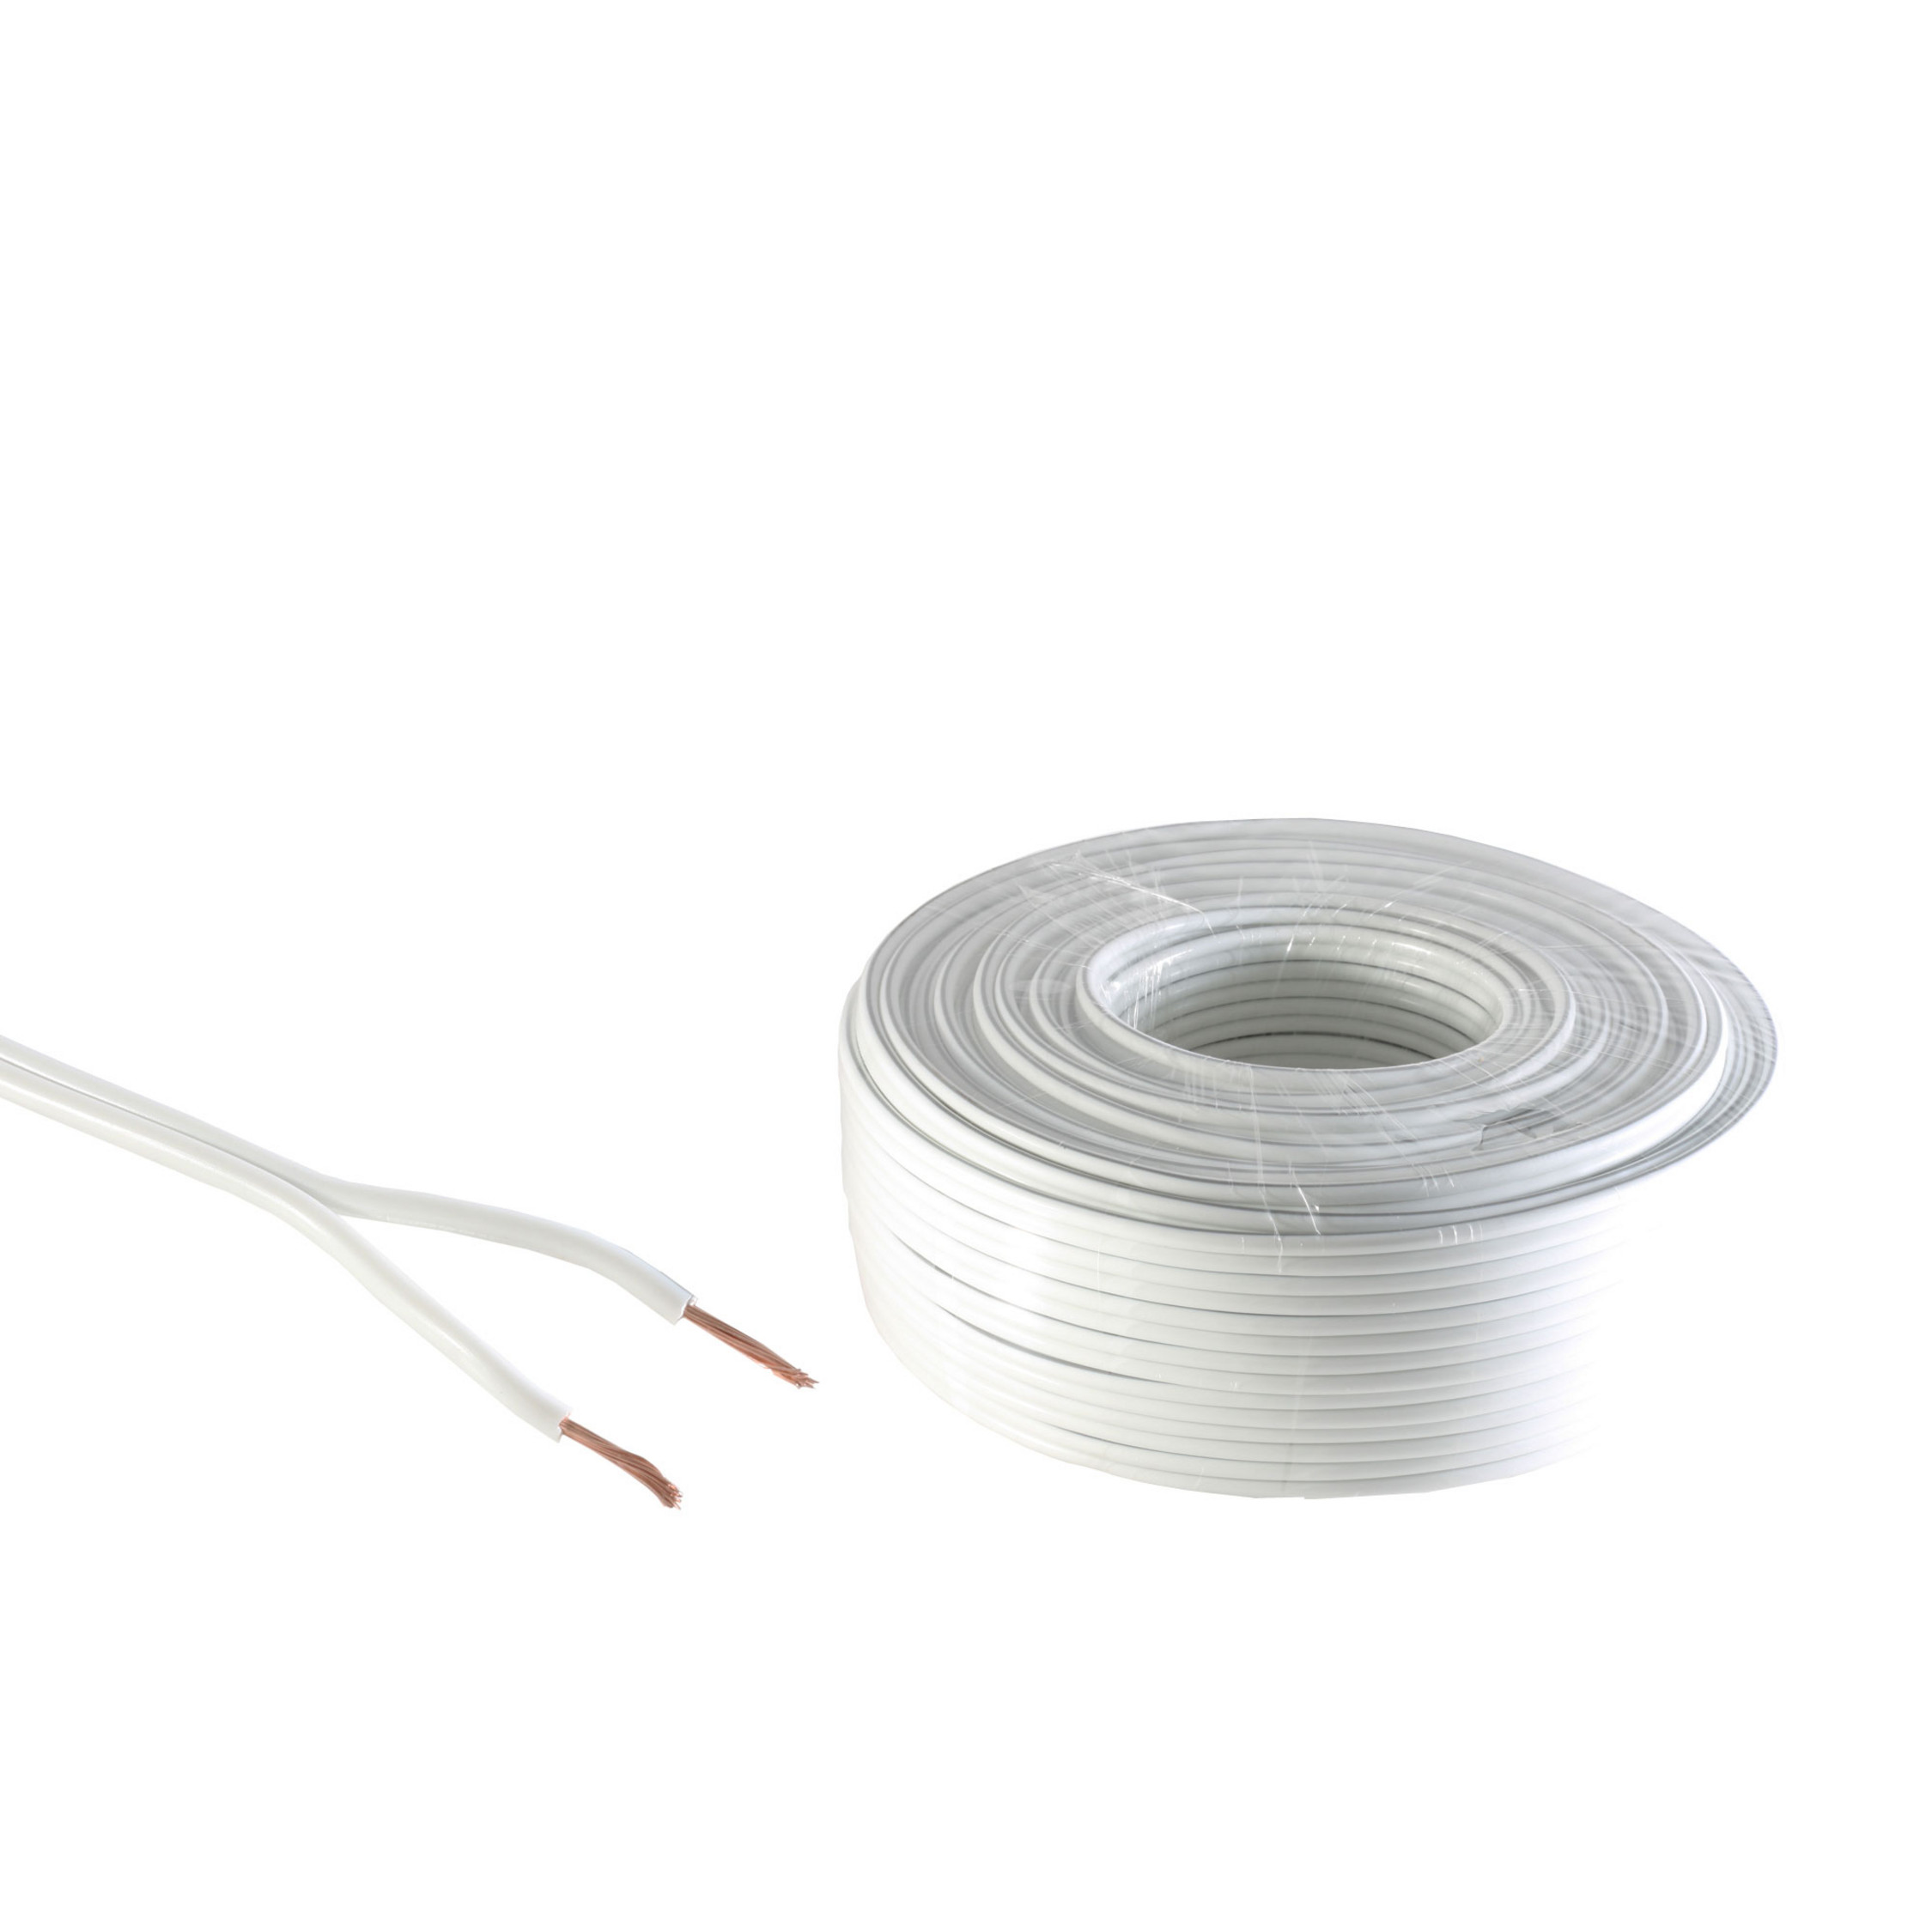 KABELBUDE Lautsprecher-Kabel 0,75mm² weiß Kabel 50m 24x0,20 CCA Audio/Video